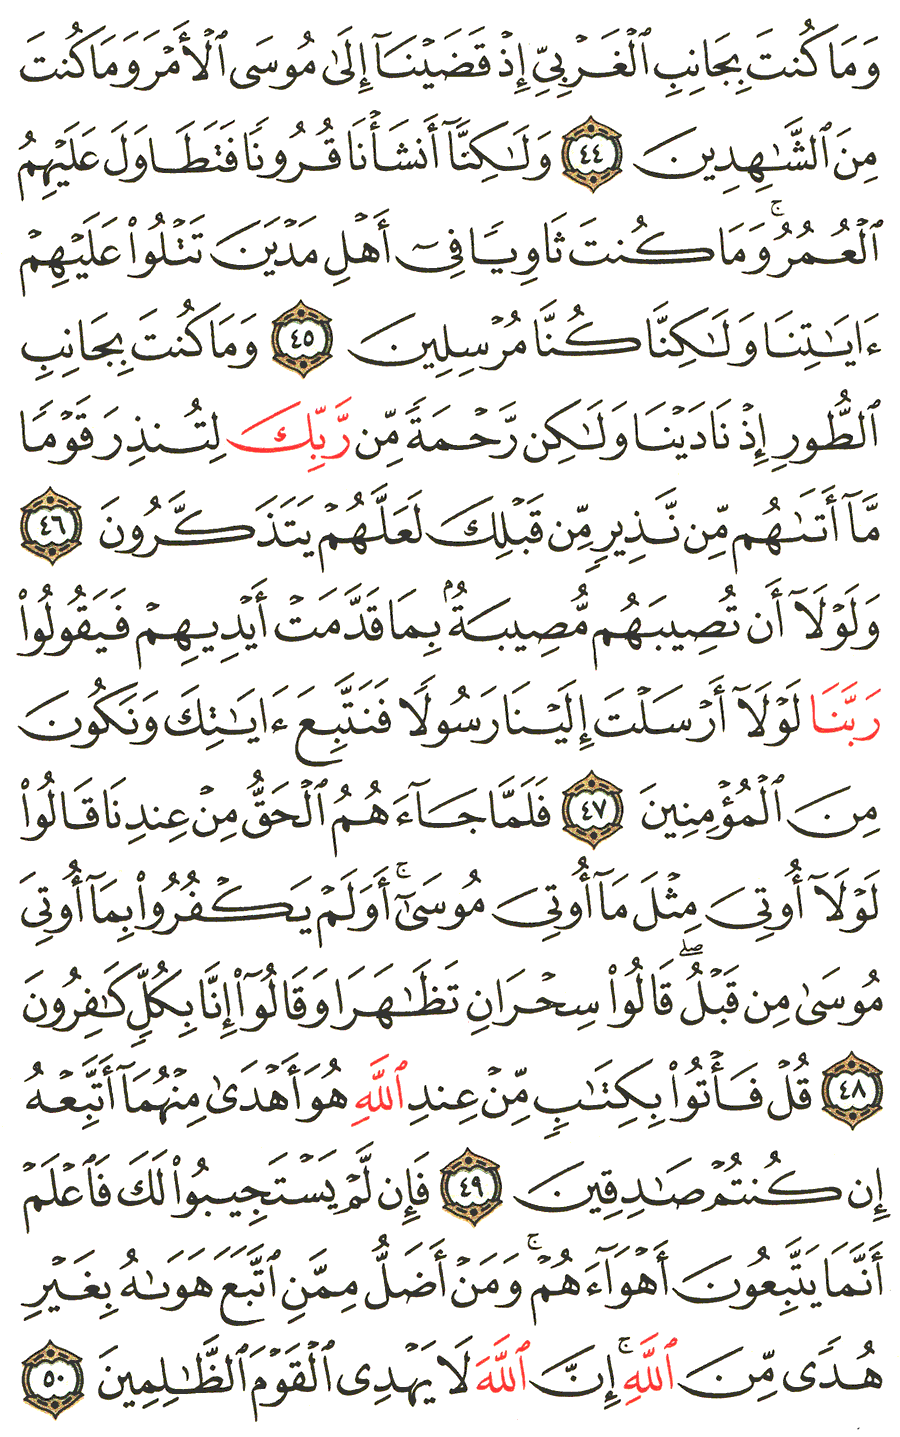 الصفحة رقم 391  من القرآن الكريم مكتوبة من المصحف